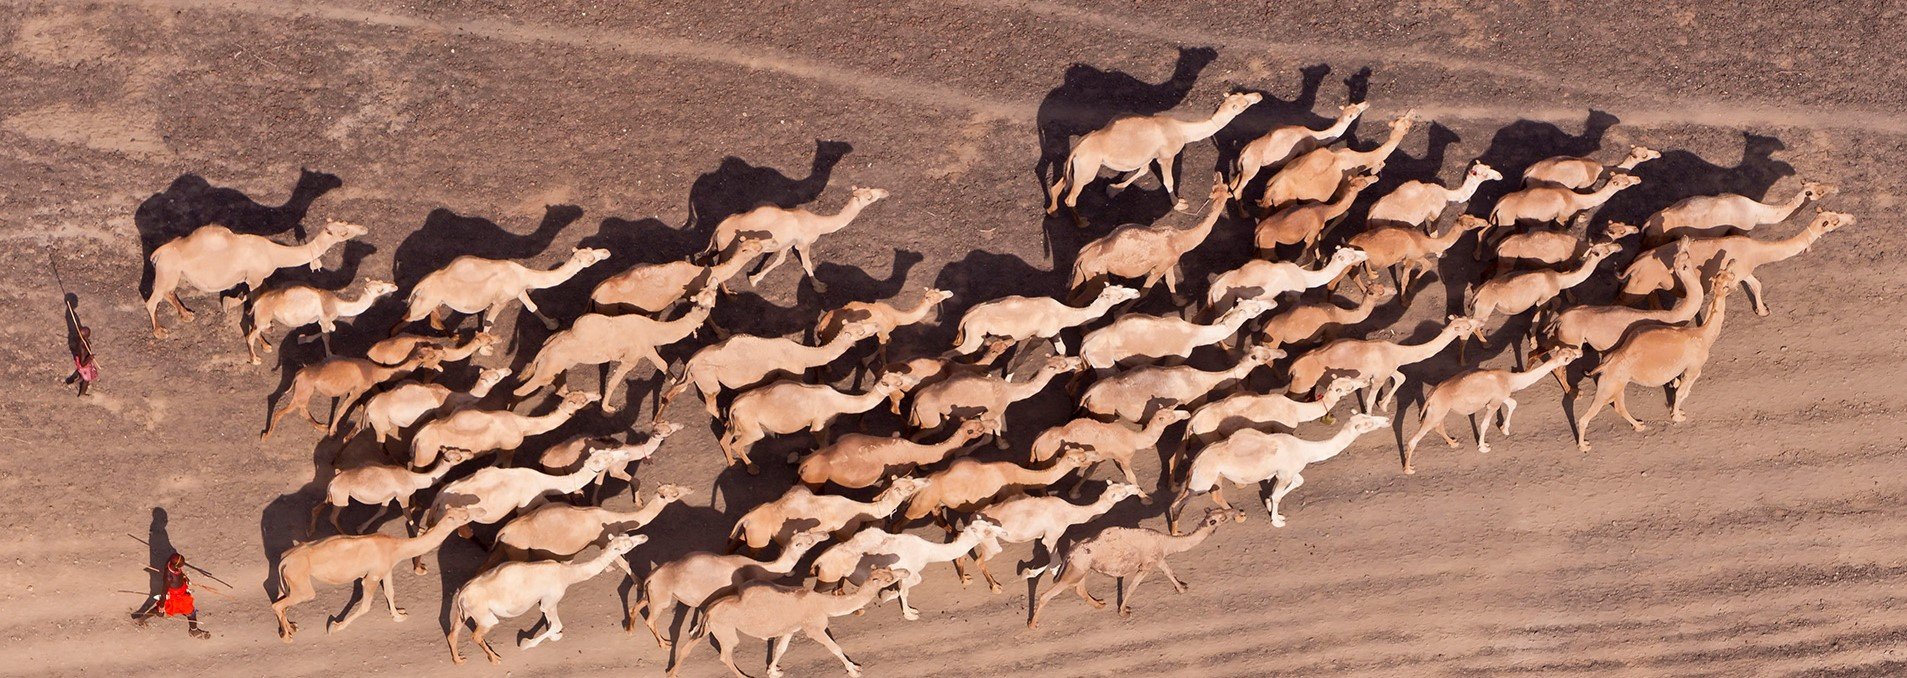 Coronaviren sind für die MERS-Erkrankung von Kamelen verantwortlich. © Martin Harvey / WWF